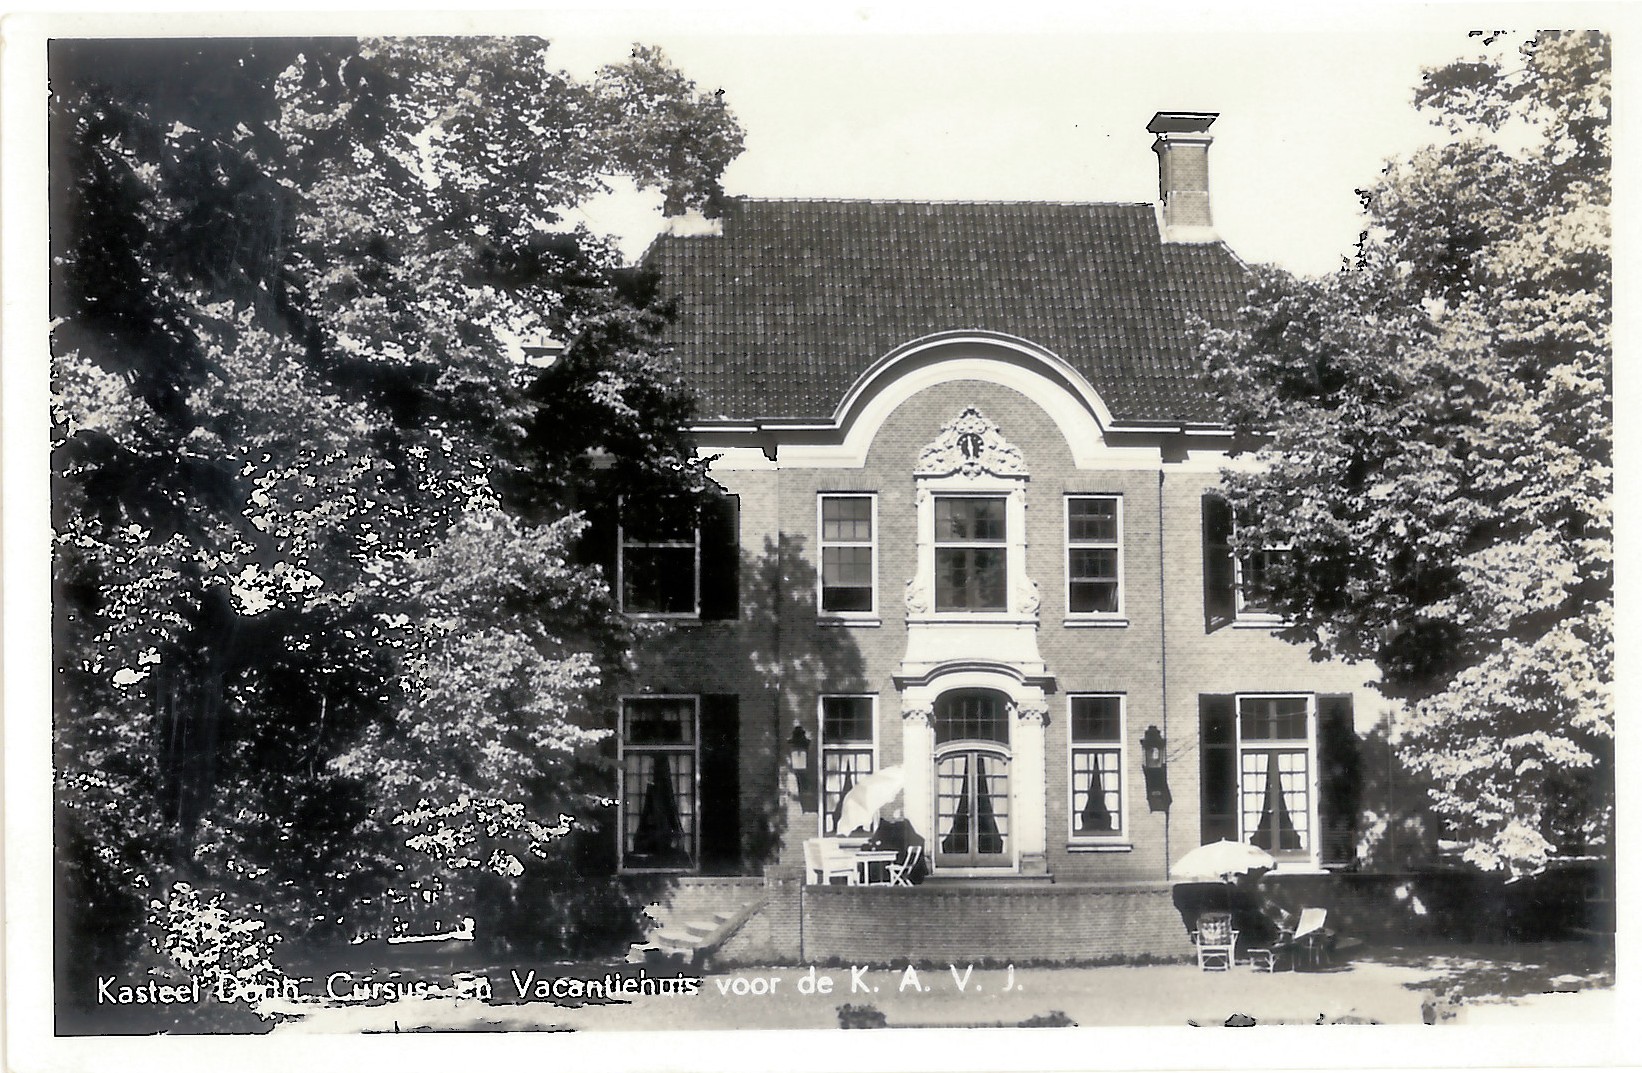 kasteel huize dorth vakantiehuis KAVJ 1948